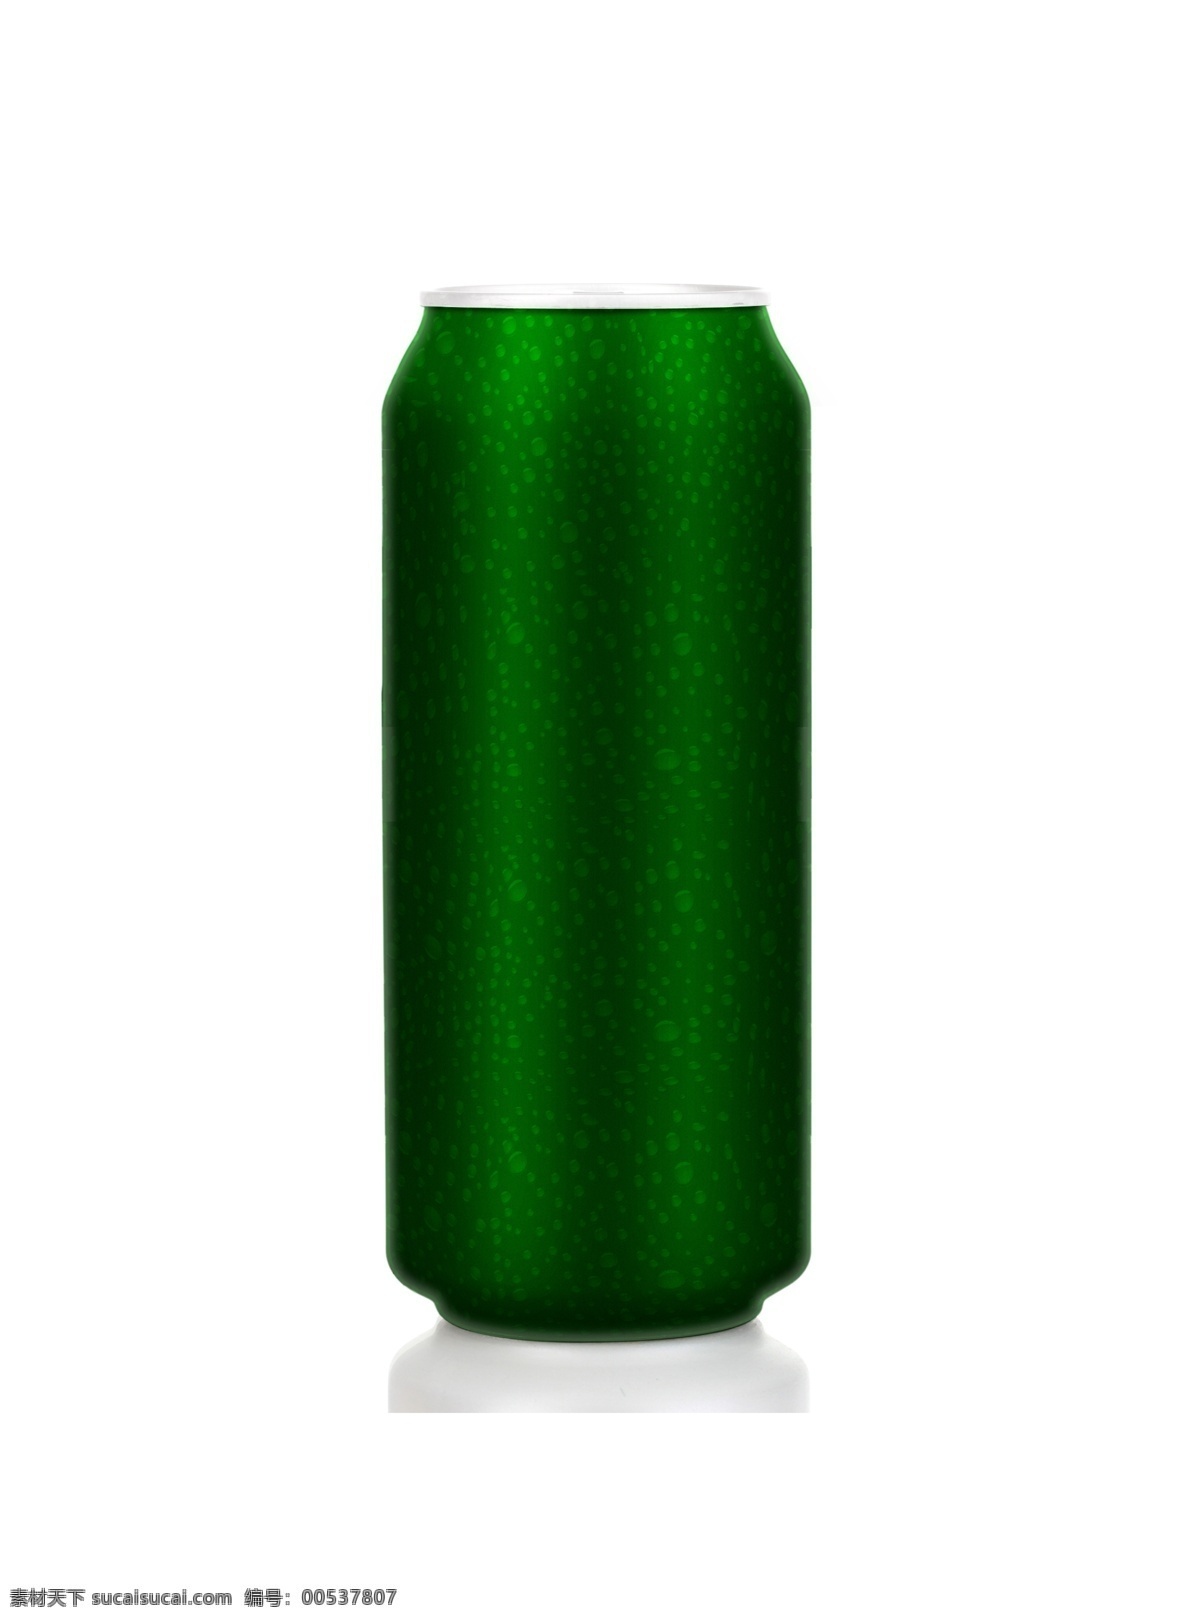 分层易拉罐 啤酒 易拉罐 绿色 水珠 效果 易拉罐效果图 大罐易拉罐 大罐 包装 饮料罐体 酒水包装 分层